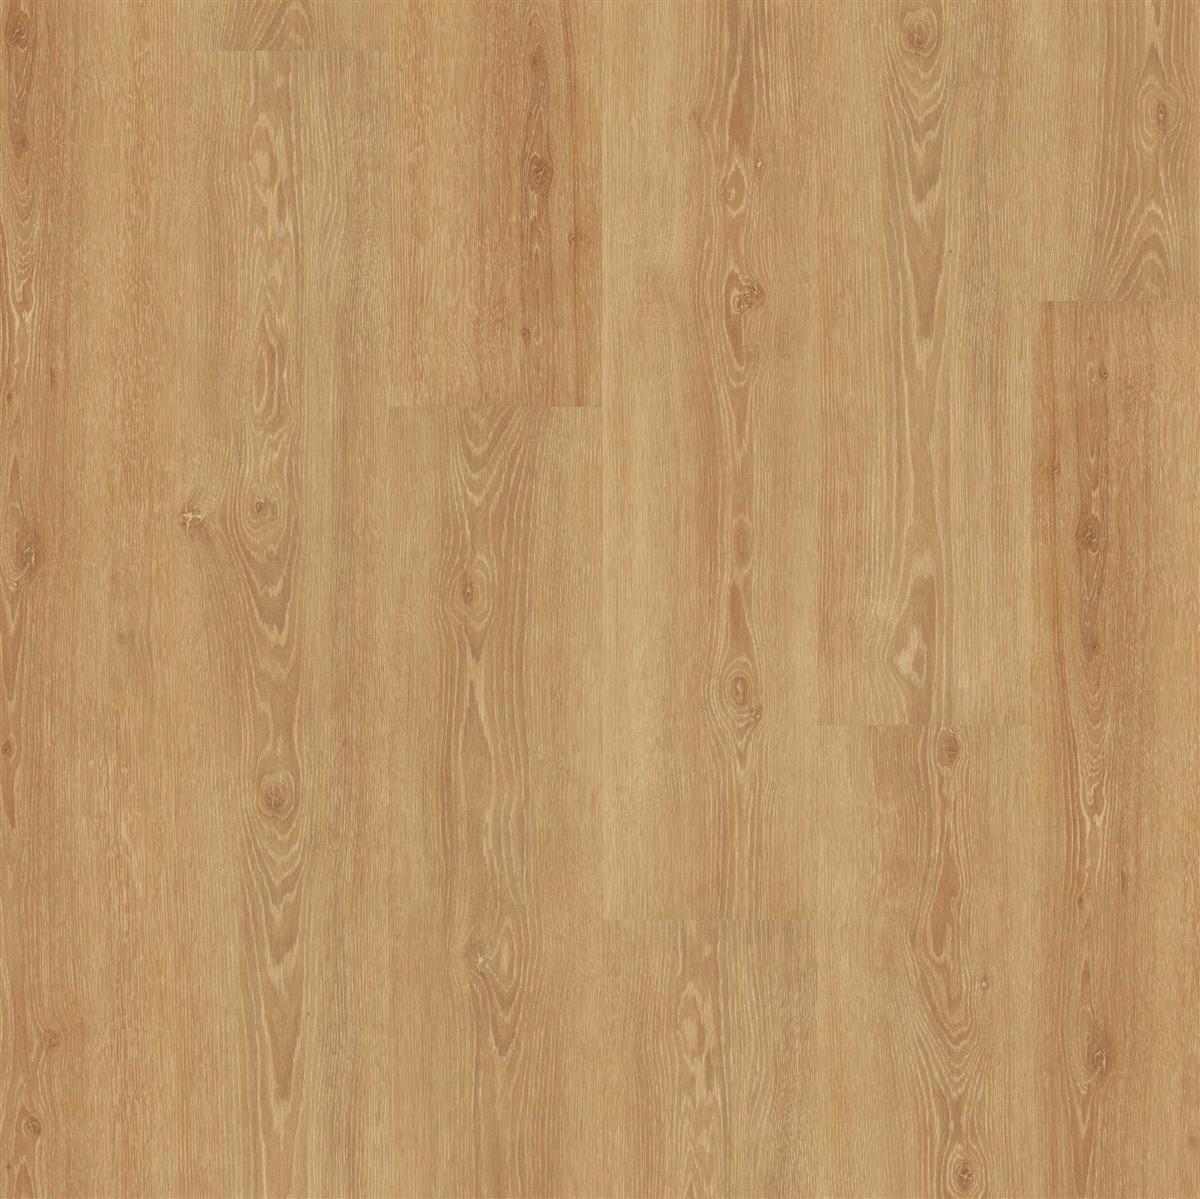 Klebevinyl JOKA Designböden 555 | 5307 Perfect Natural Oak